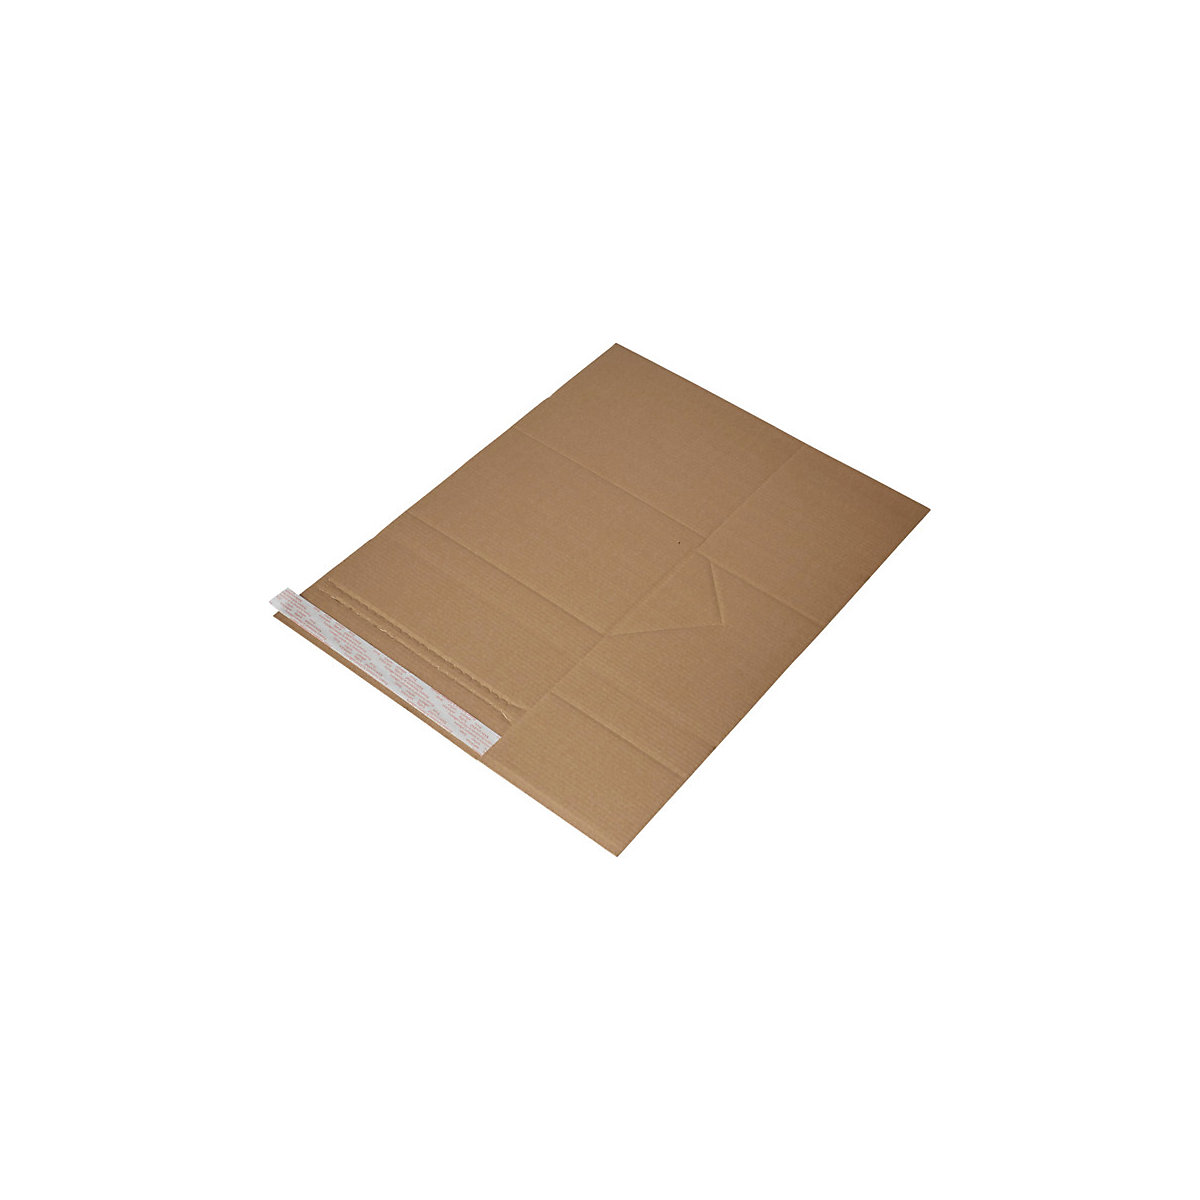 Imballaggio universale Drehfix – flow, con chiusura autoadesiva, lungh. x largh. 250 x 185 mm, a partire da 300 pz.-5